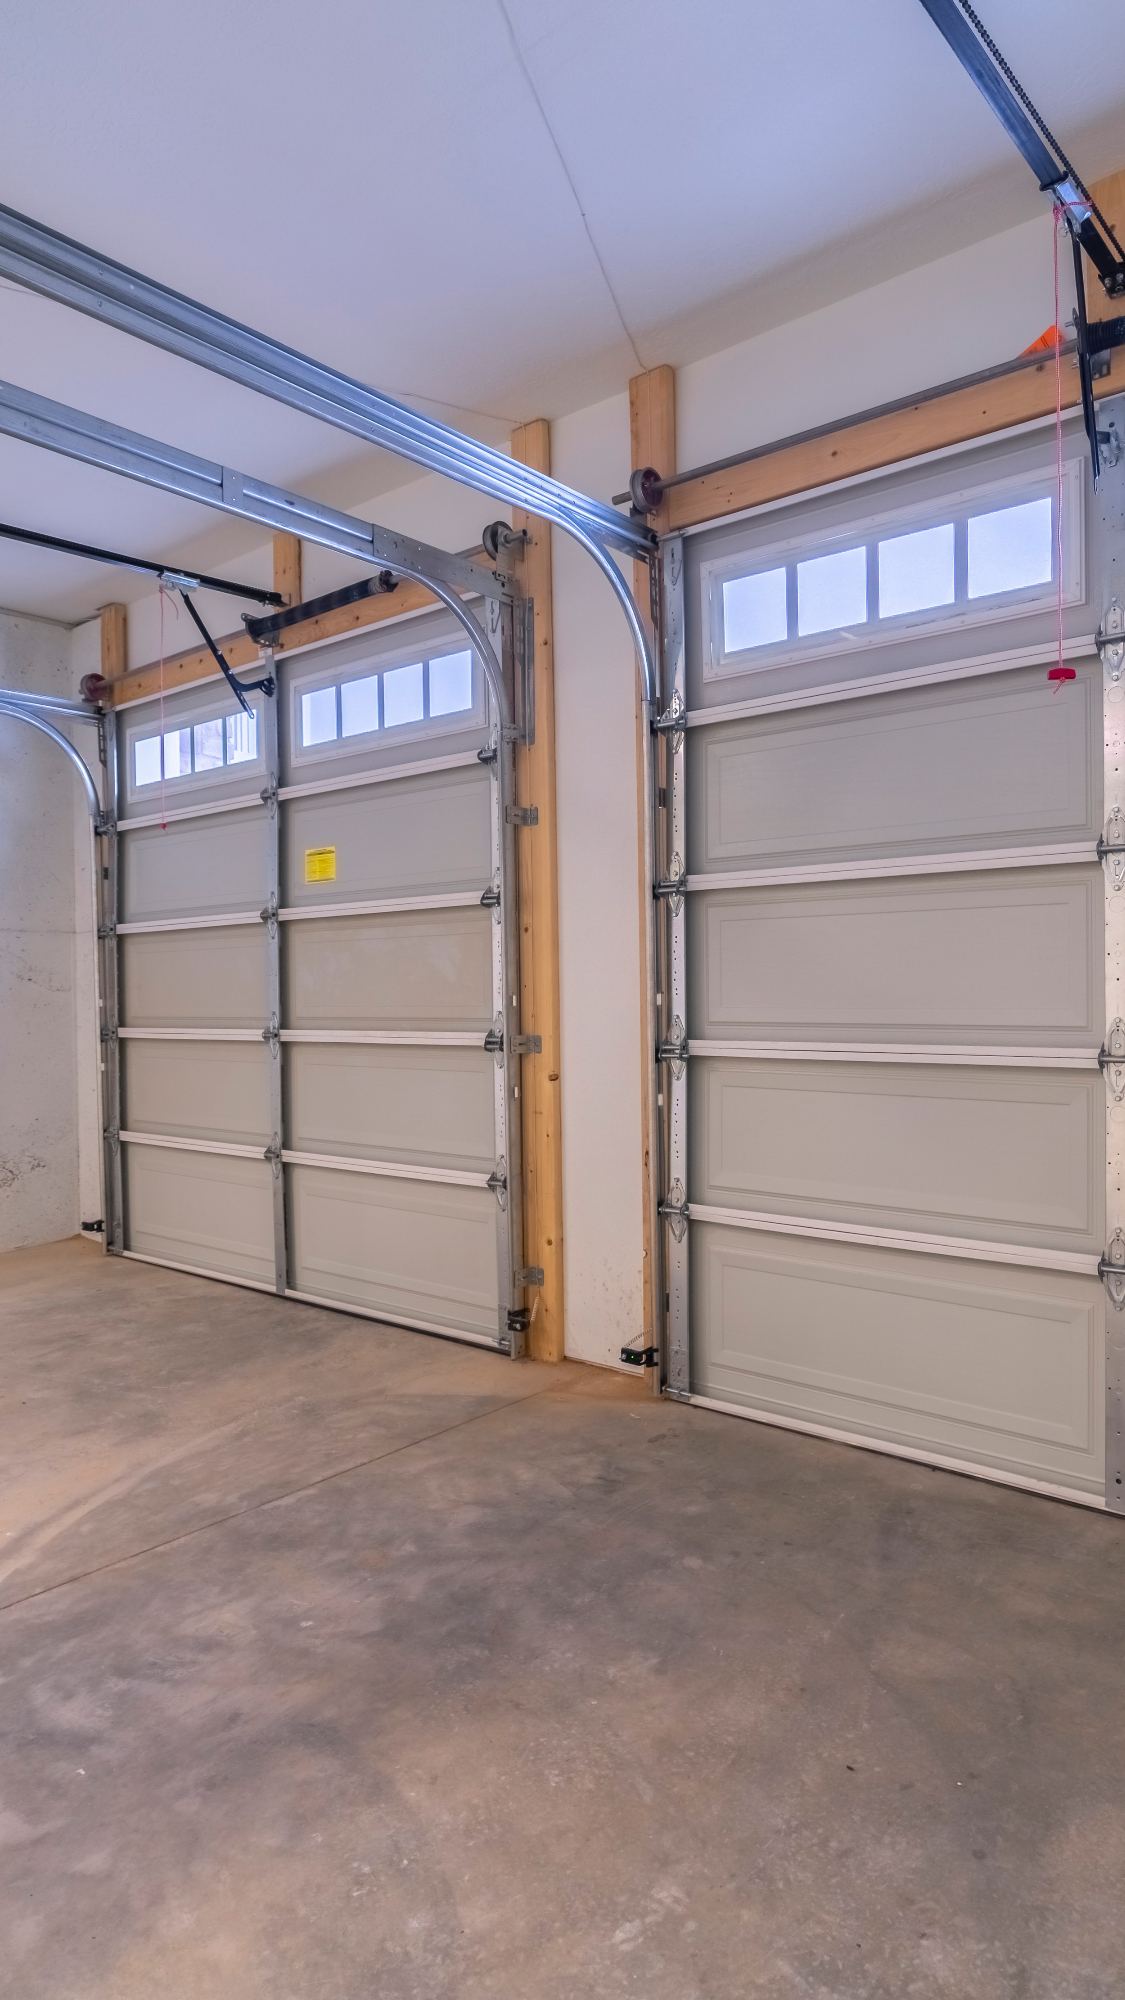 Nova garažna vrata so se lepo podala k hiši